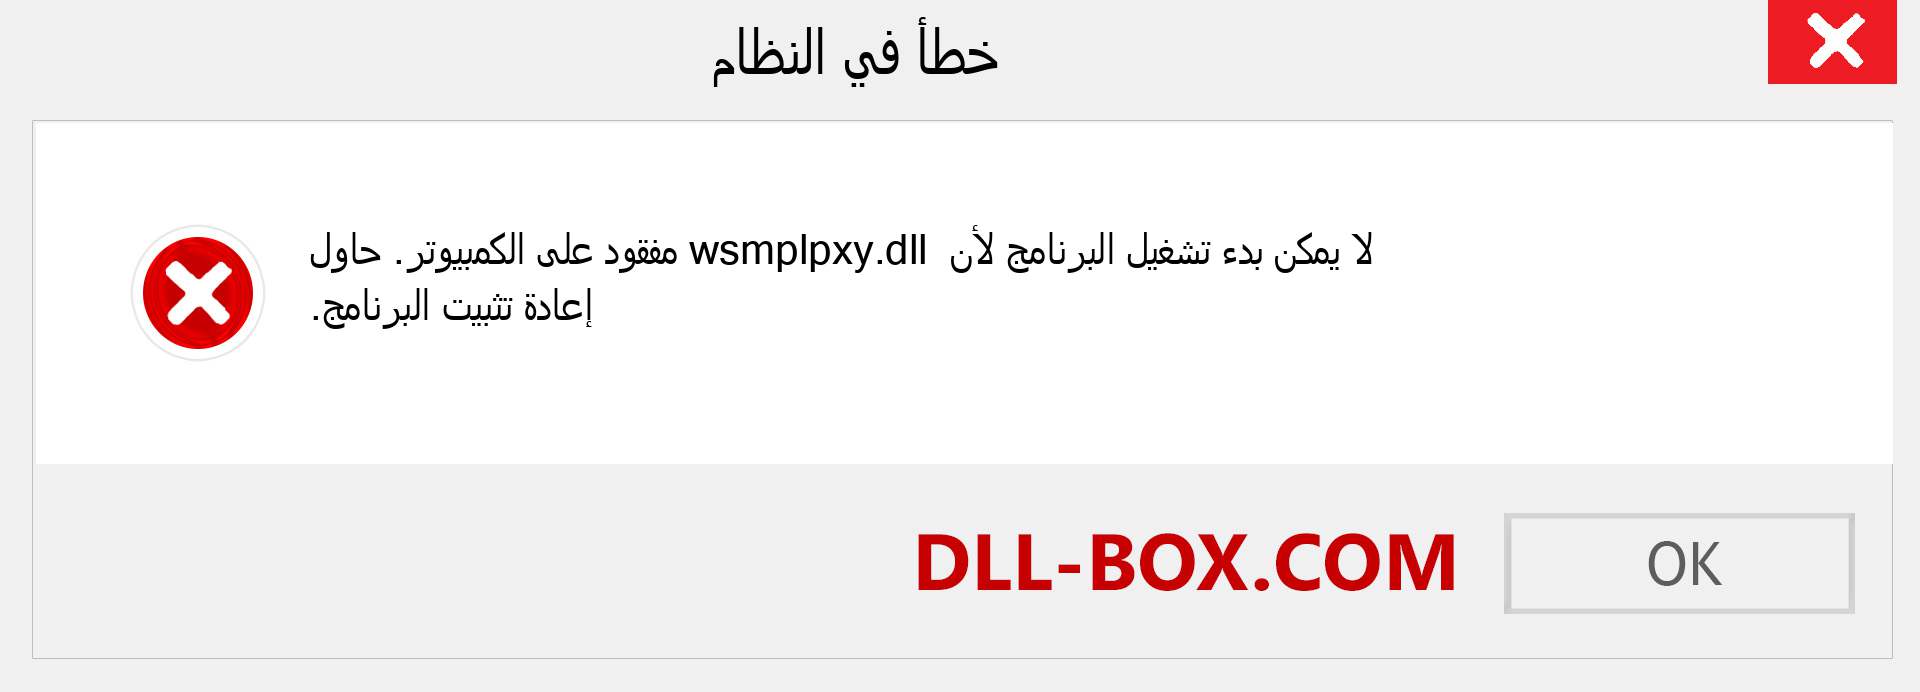 ملف wsmplpxy.dll مفقود ؟. التنزيل لنظام التشغيل Windows 7 و 8 و 10 - إصلاح خطأ wsmplpxy dll المفقود على Windows والصور والصور